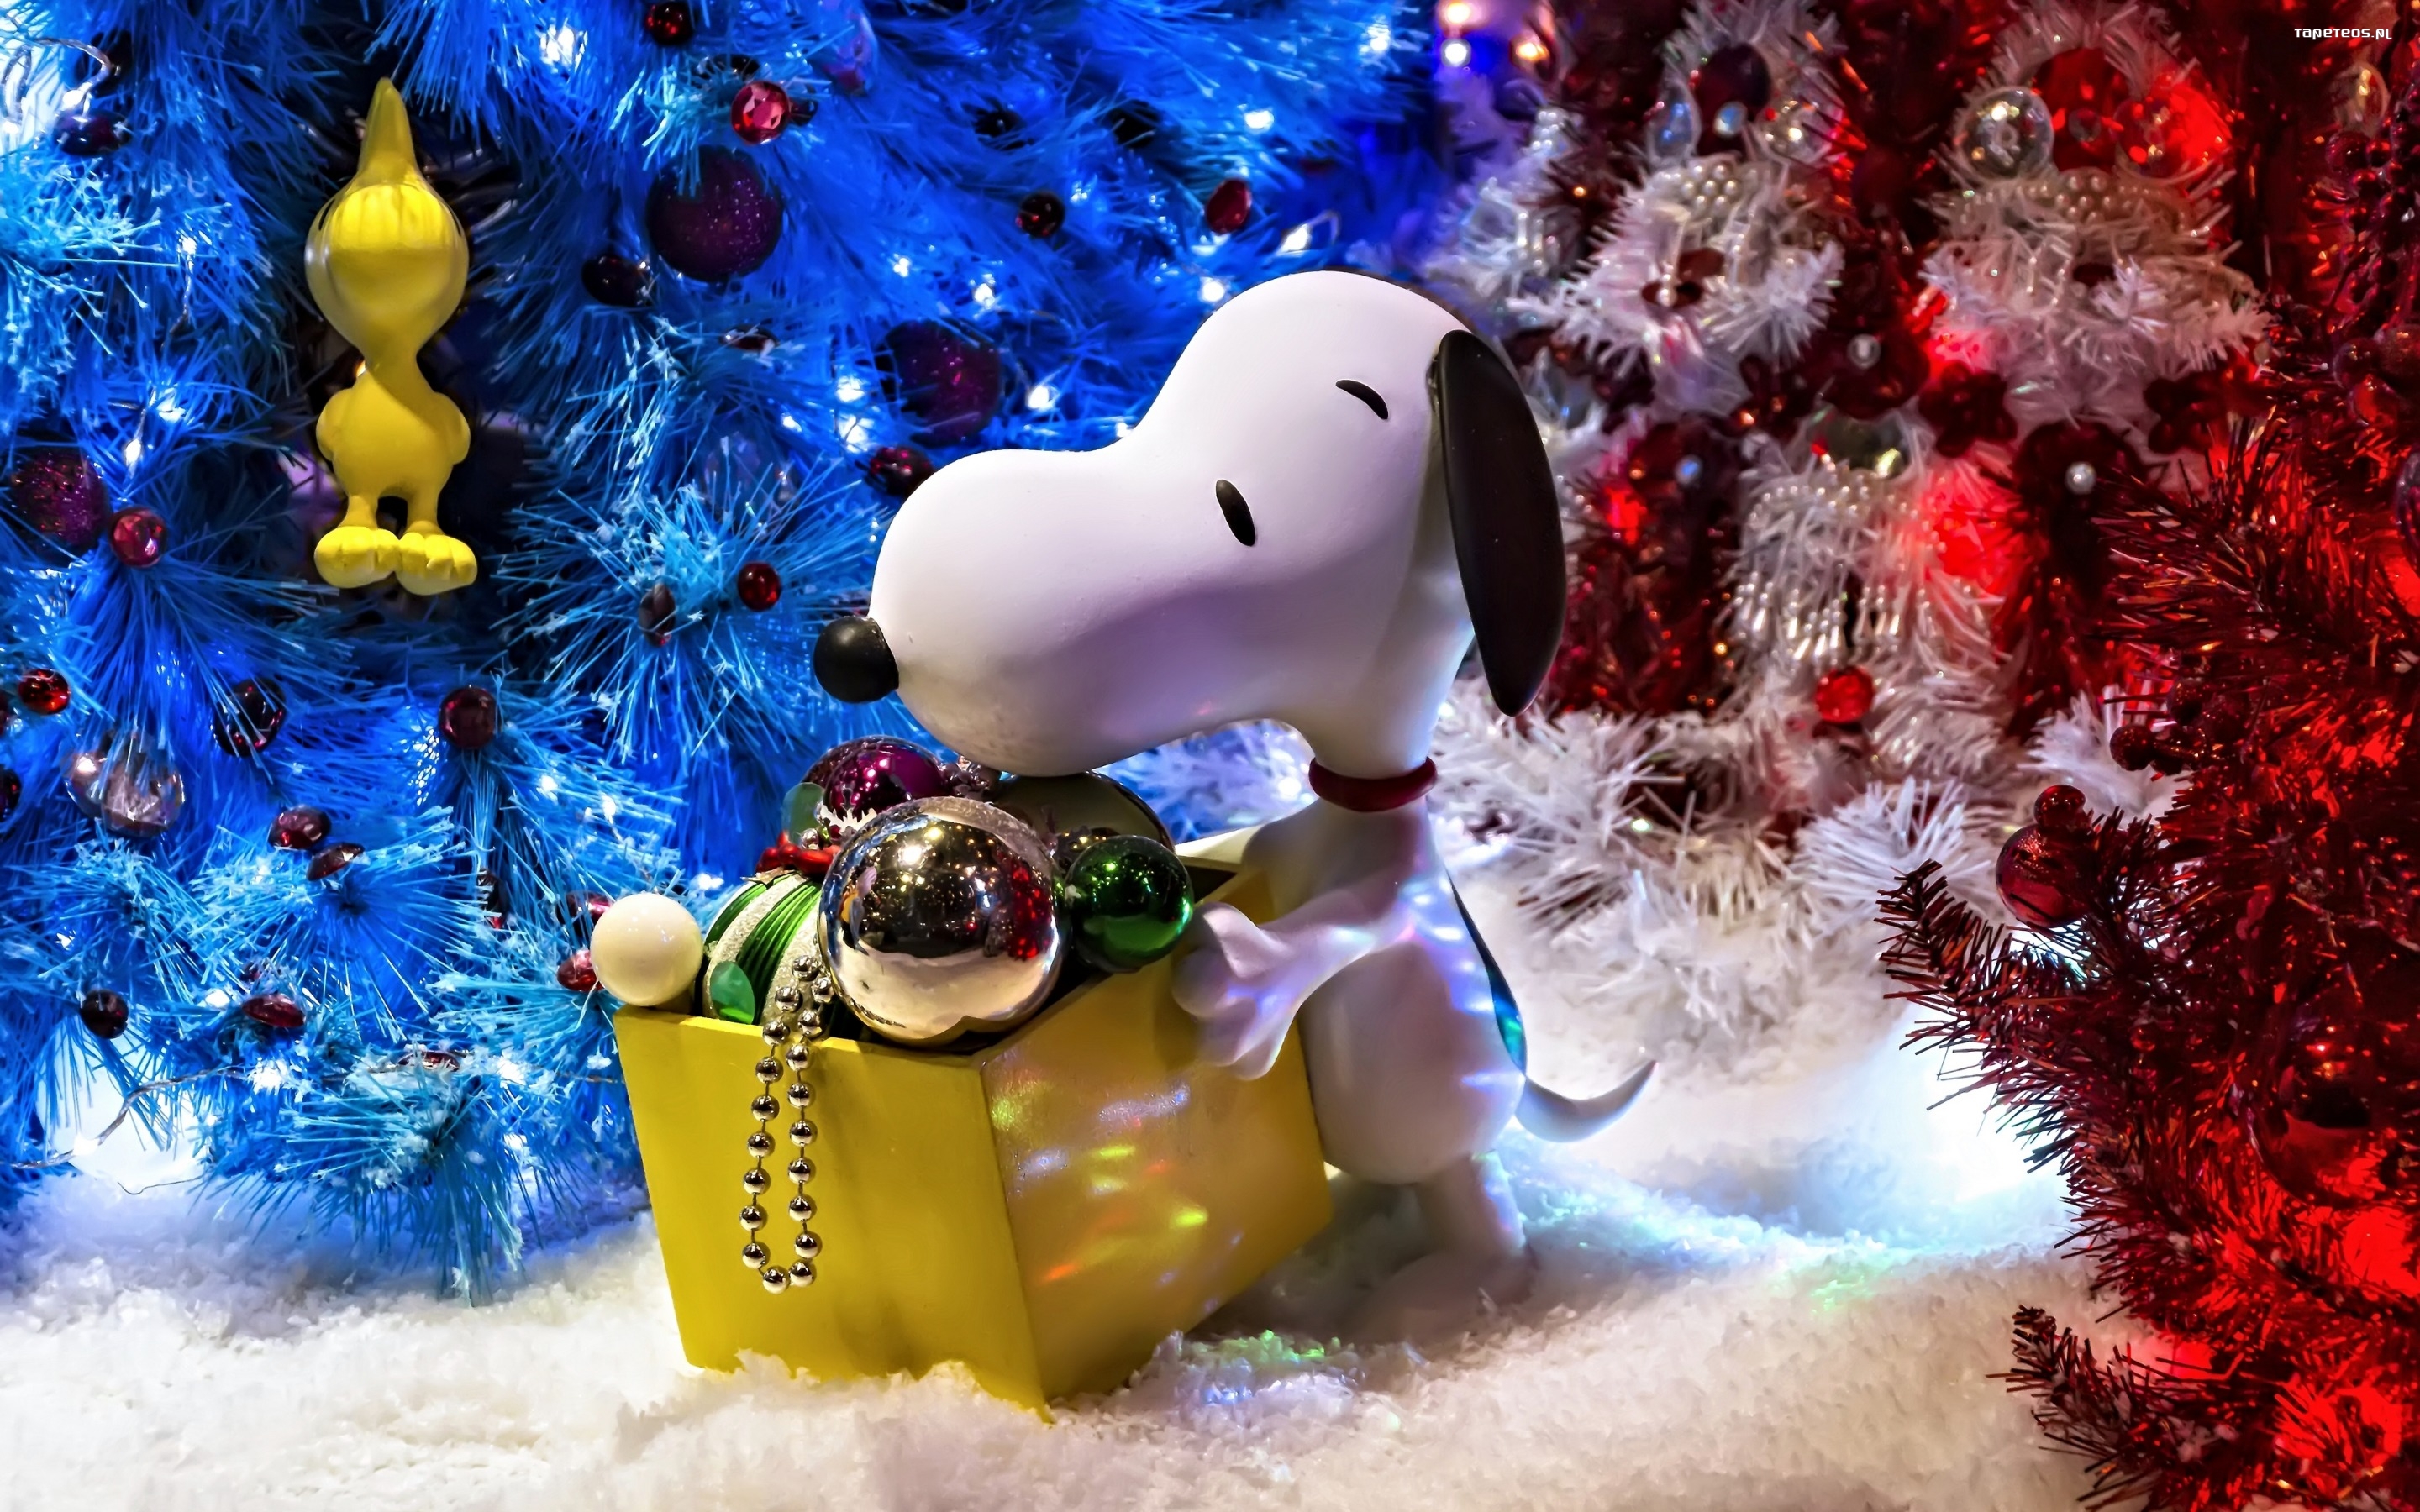 Swieta, Boze Narodzenie, Christmas 2880x1800 052 Piesek Snoopy, Choinka, Bombki, Ozdoby